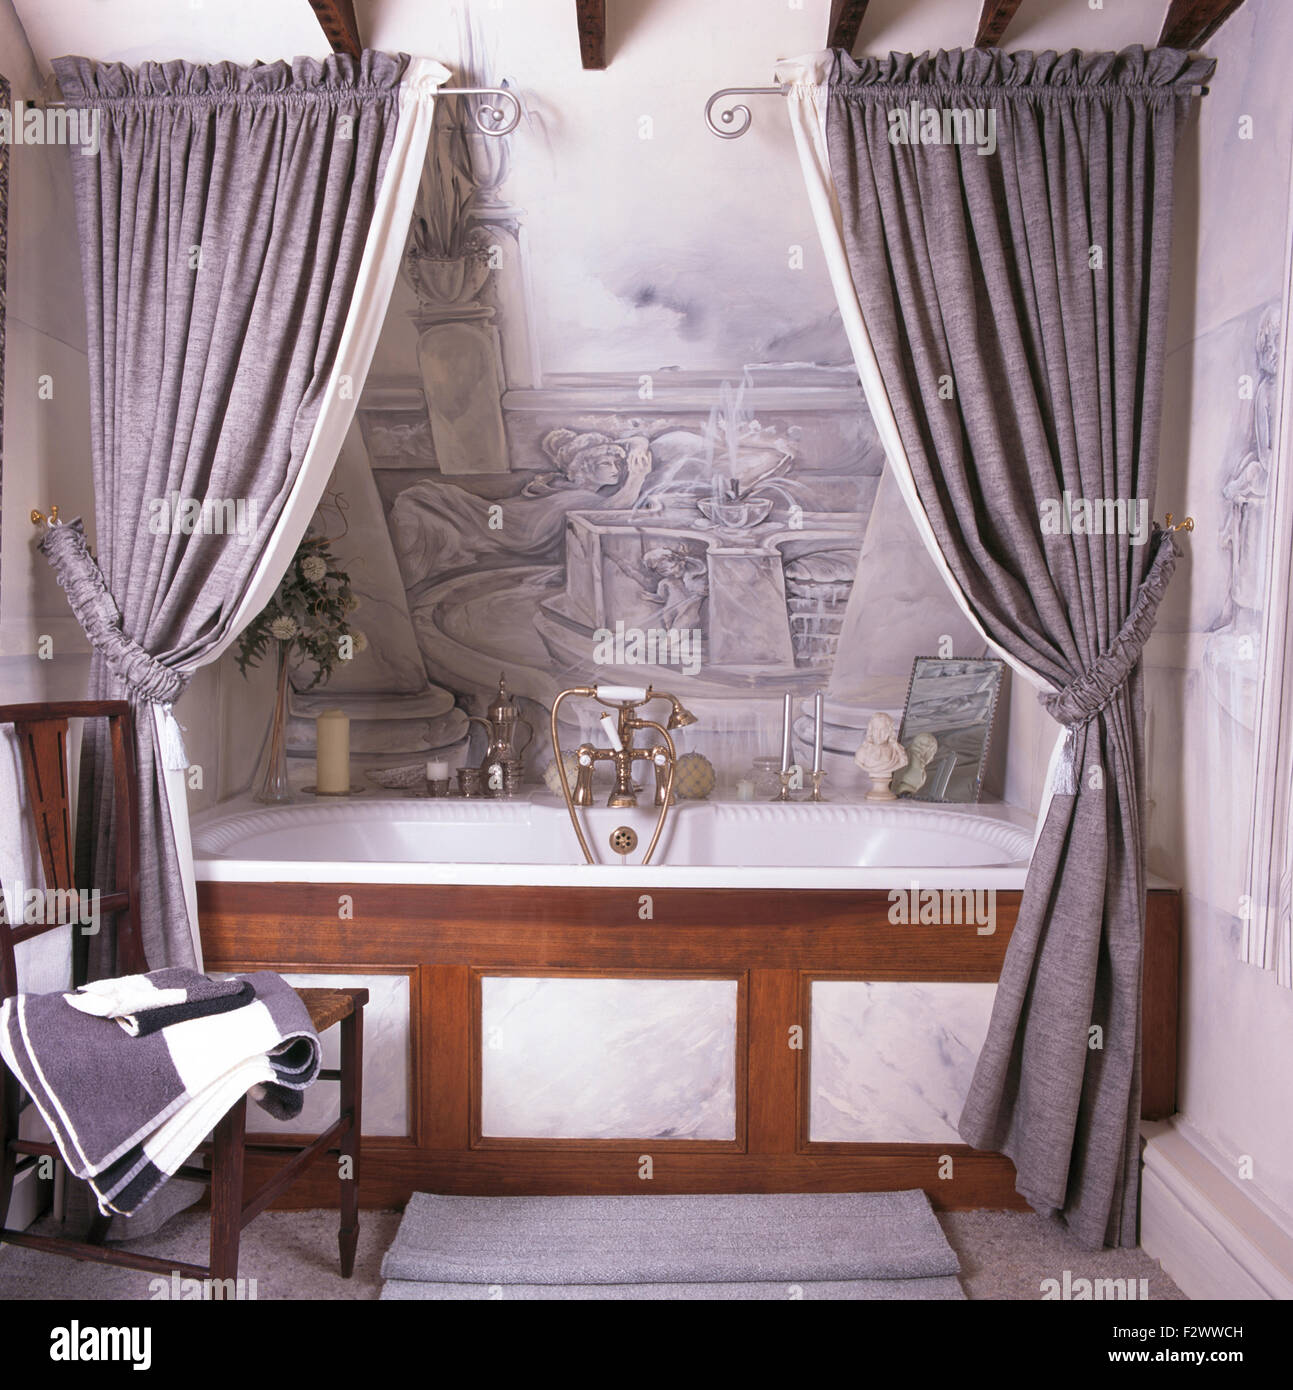 Tende di colore grigio sulla vasca da bagno in novanta bagno con